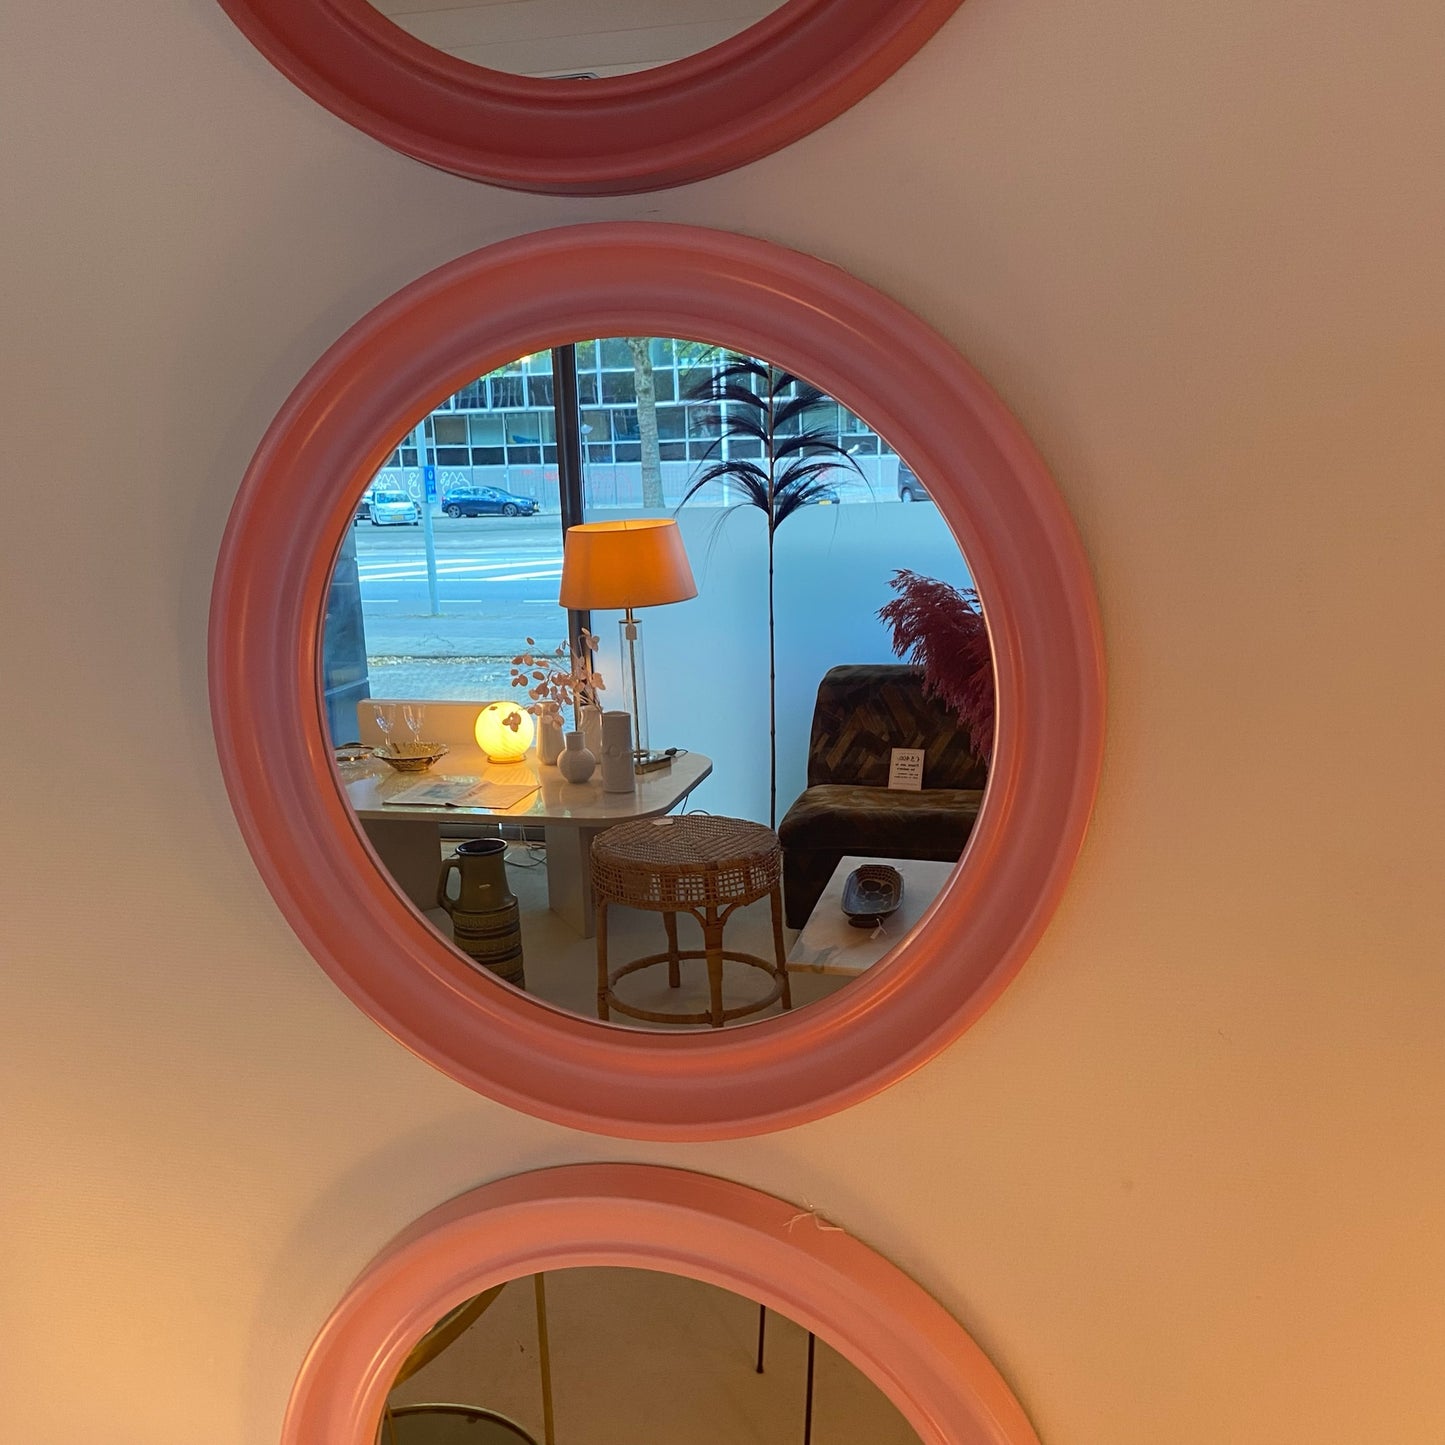 1980's Pink round mirror